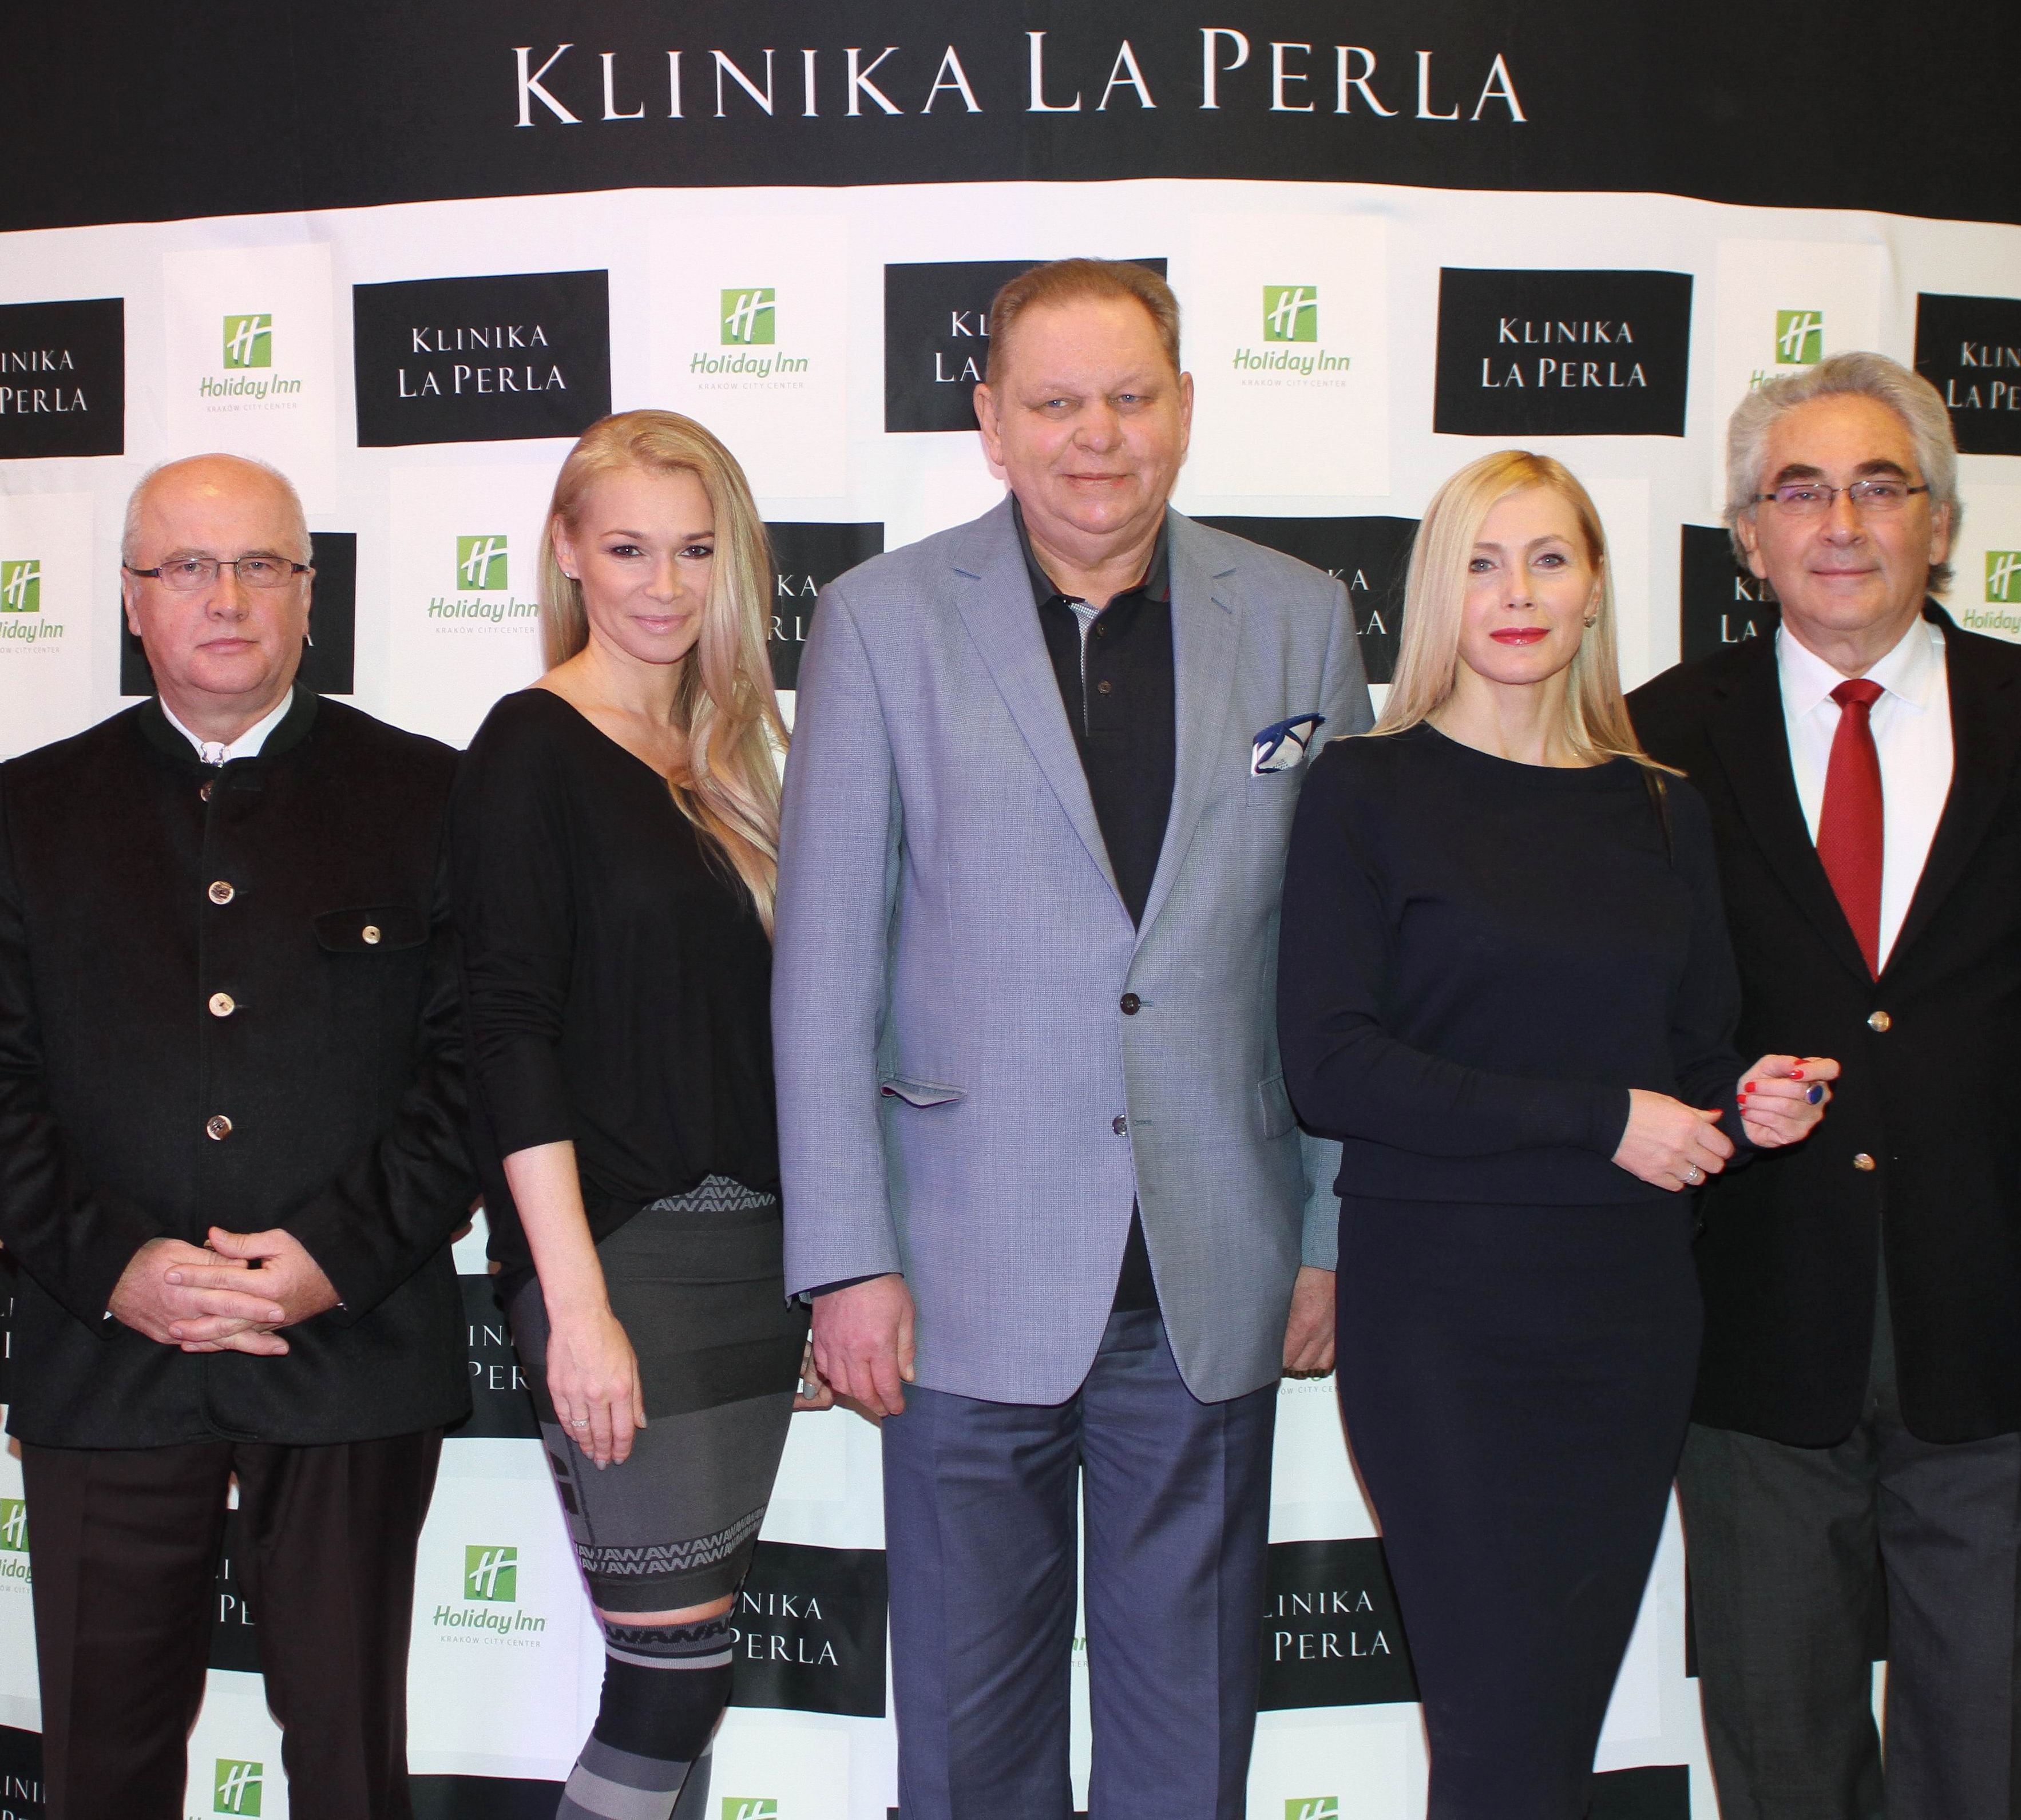 Otwarcie nowej Kliniki La Perla w Hotelu Holiday Inn w Krakowie